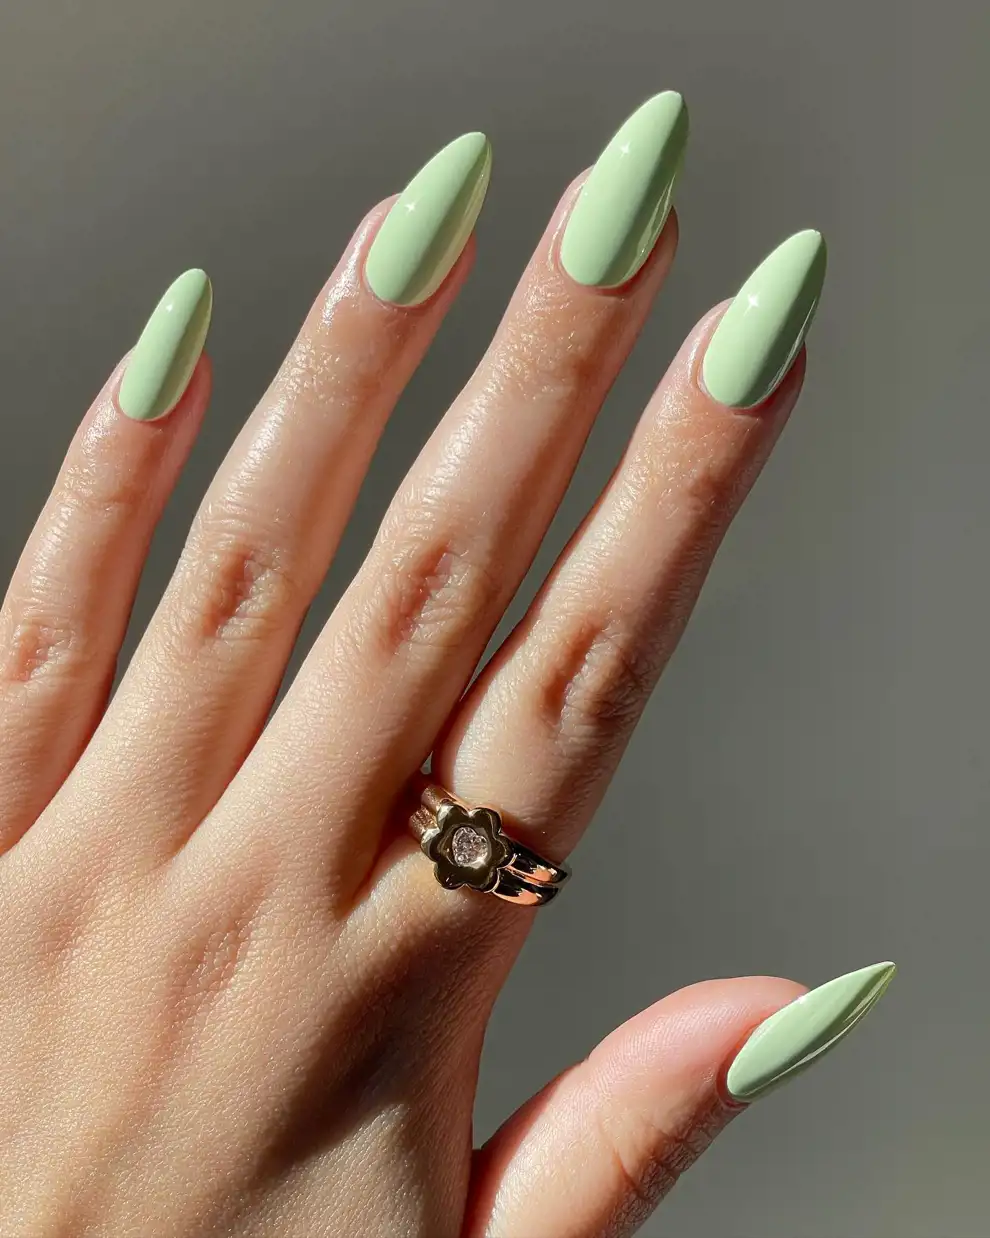 Colores de uñas: verdes